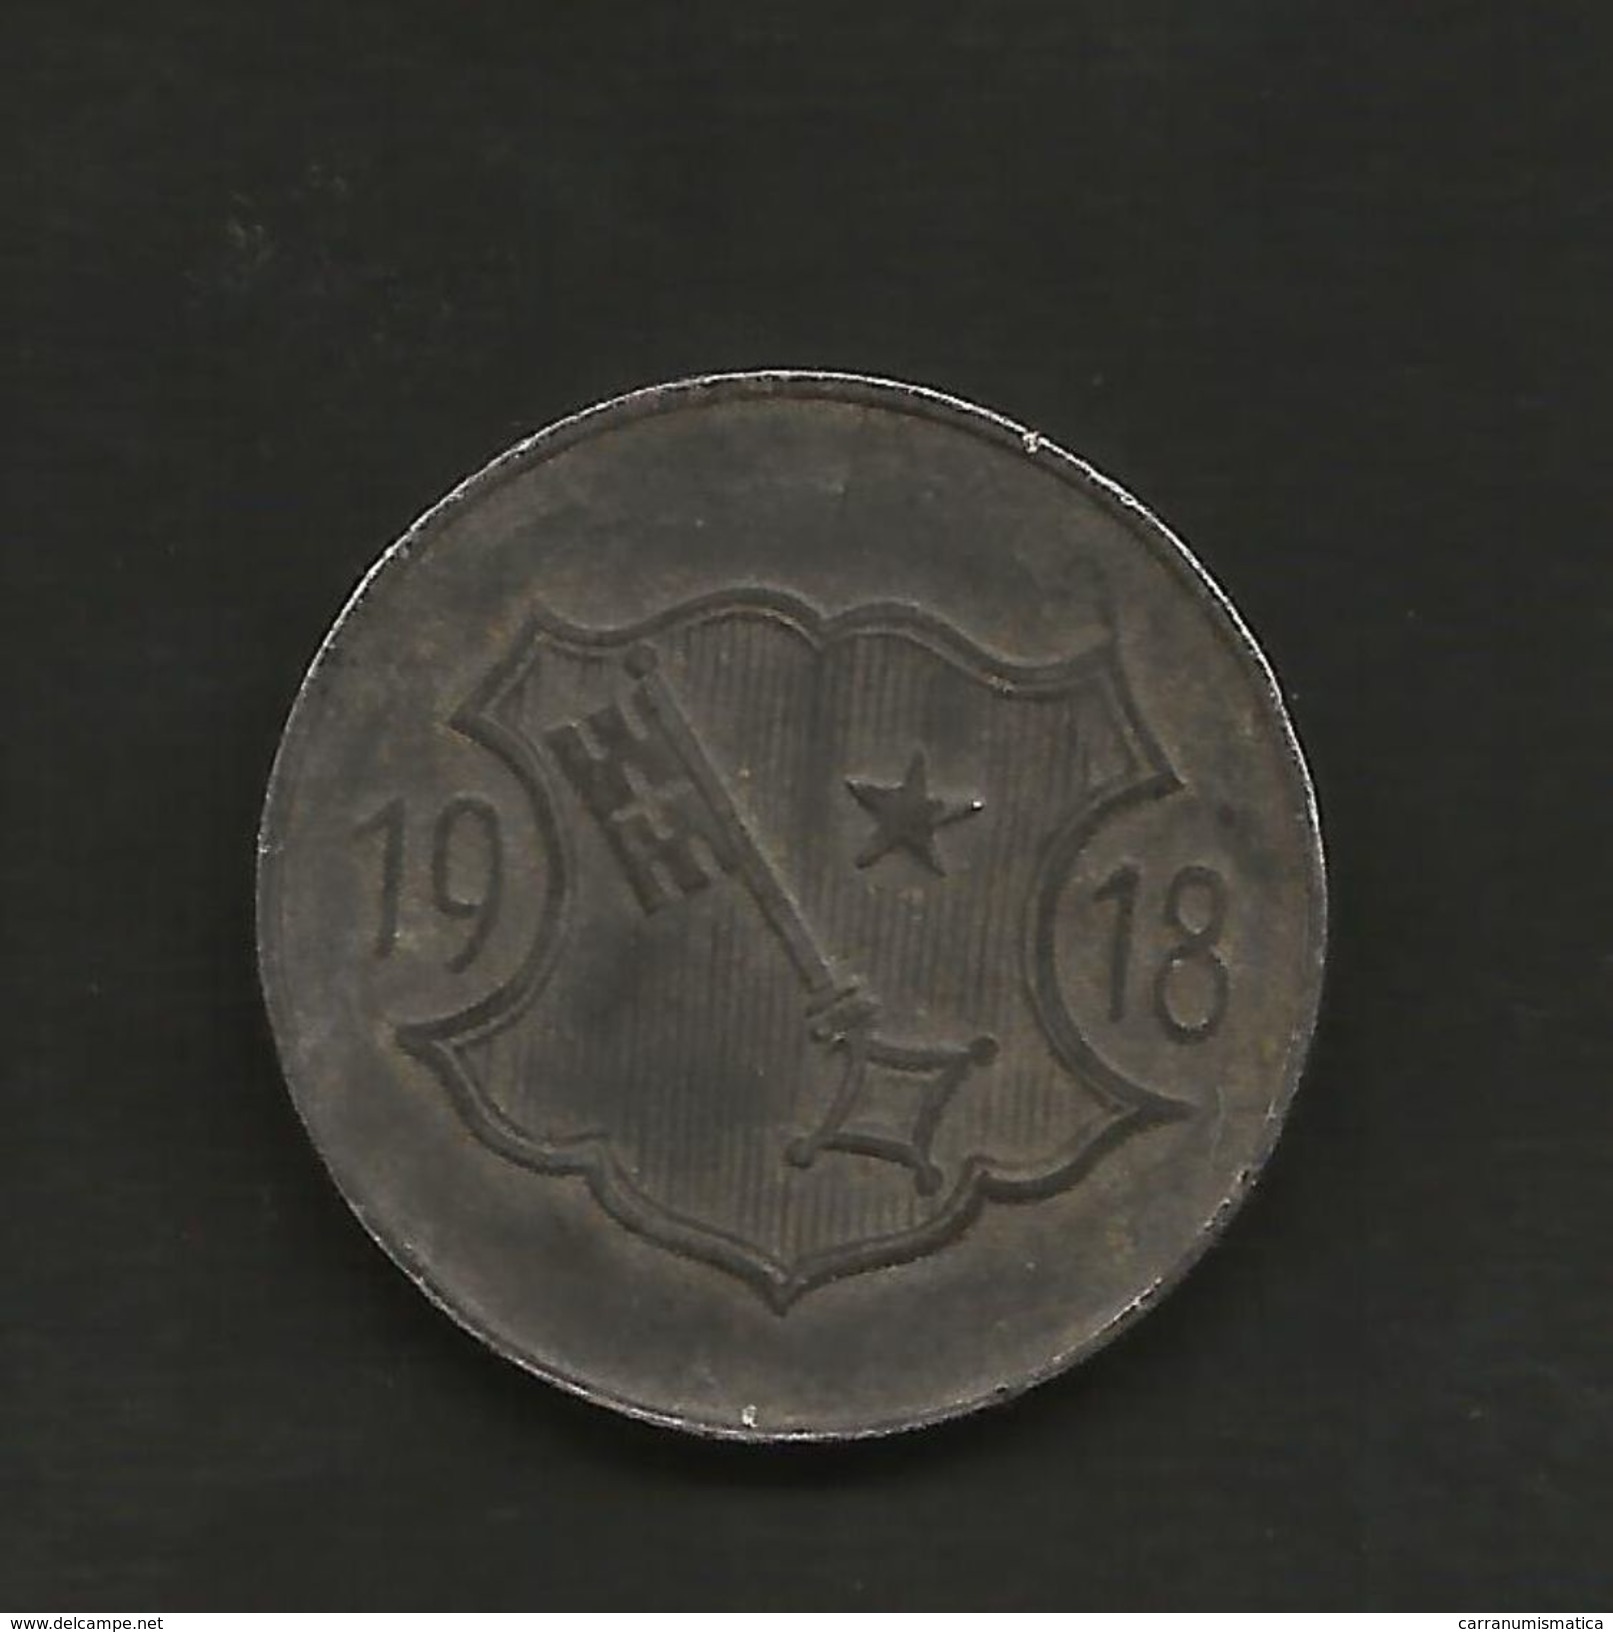 DEUTSCHLAND / GERMANY - NOTGELD - Stadt WORMS - 10 Pfennig (1918) Zink / Zinc / Zinco - Monetary/Of Necessity